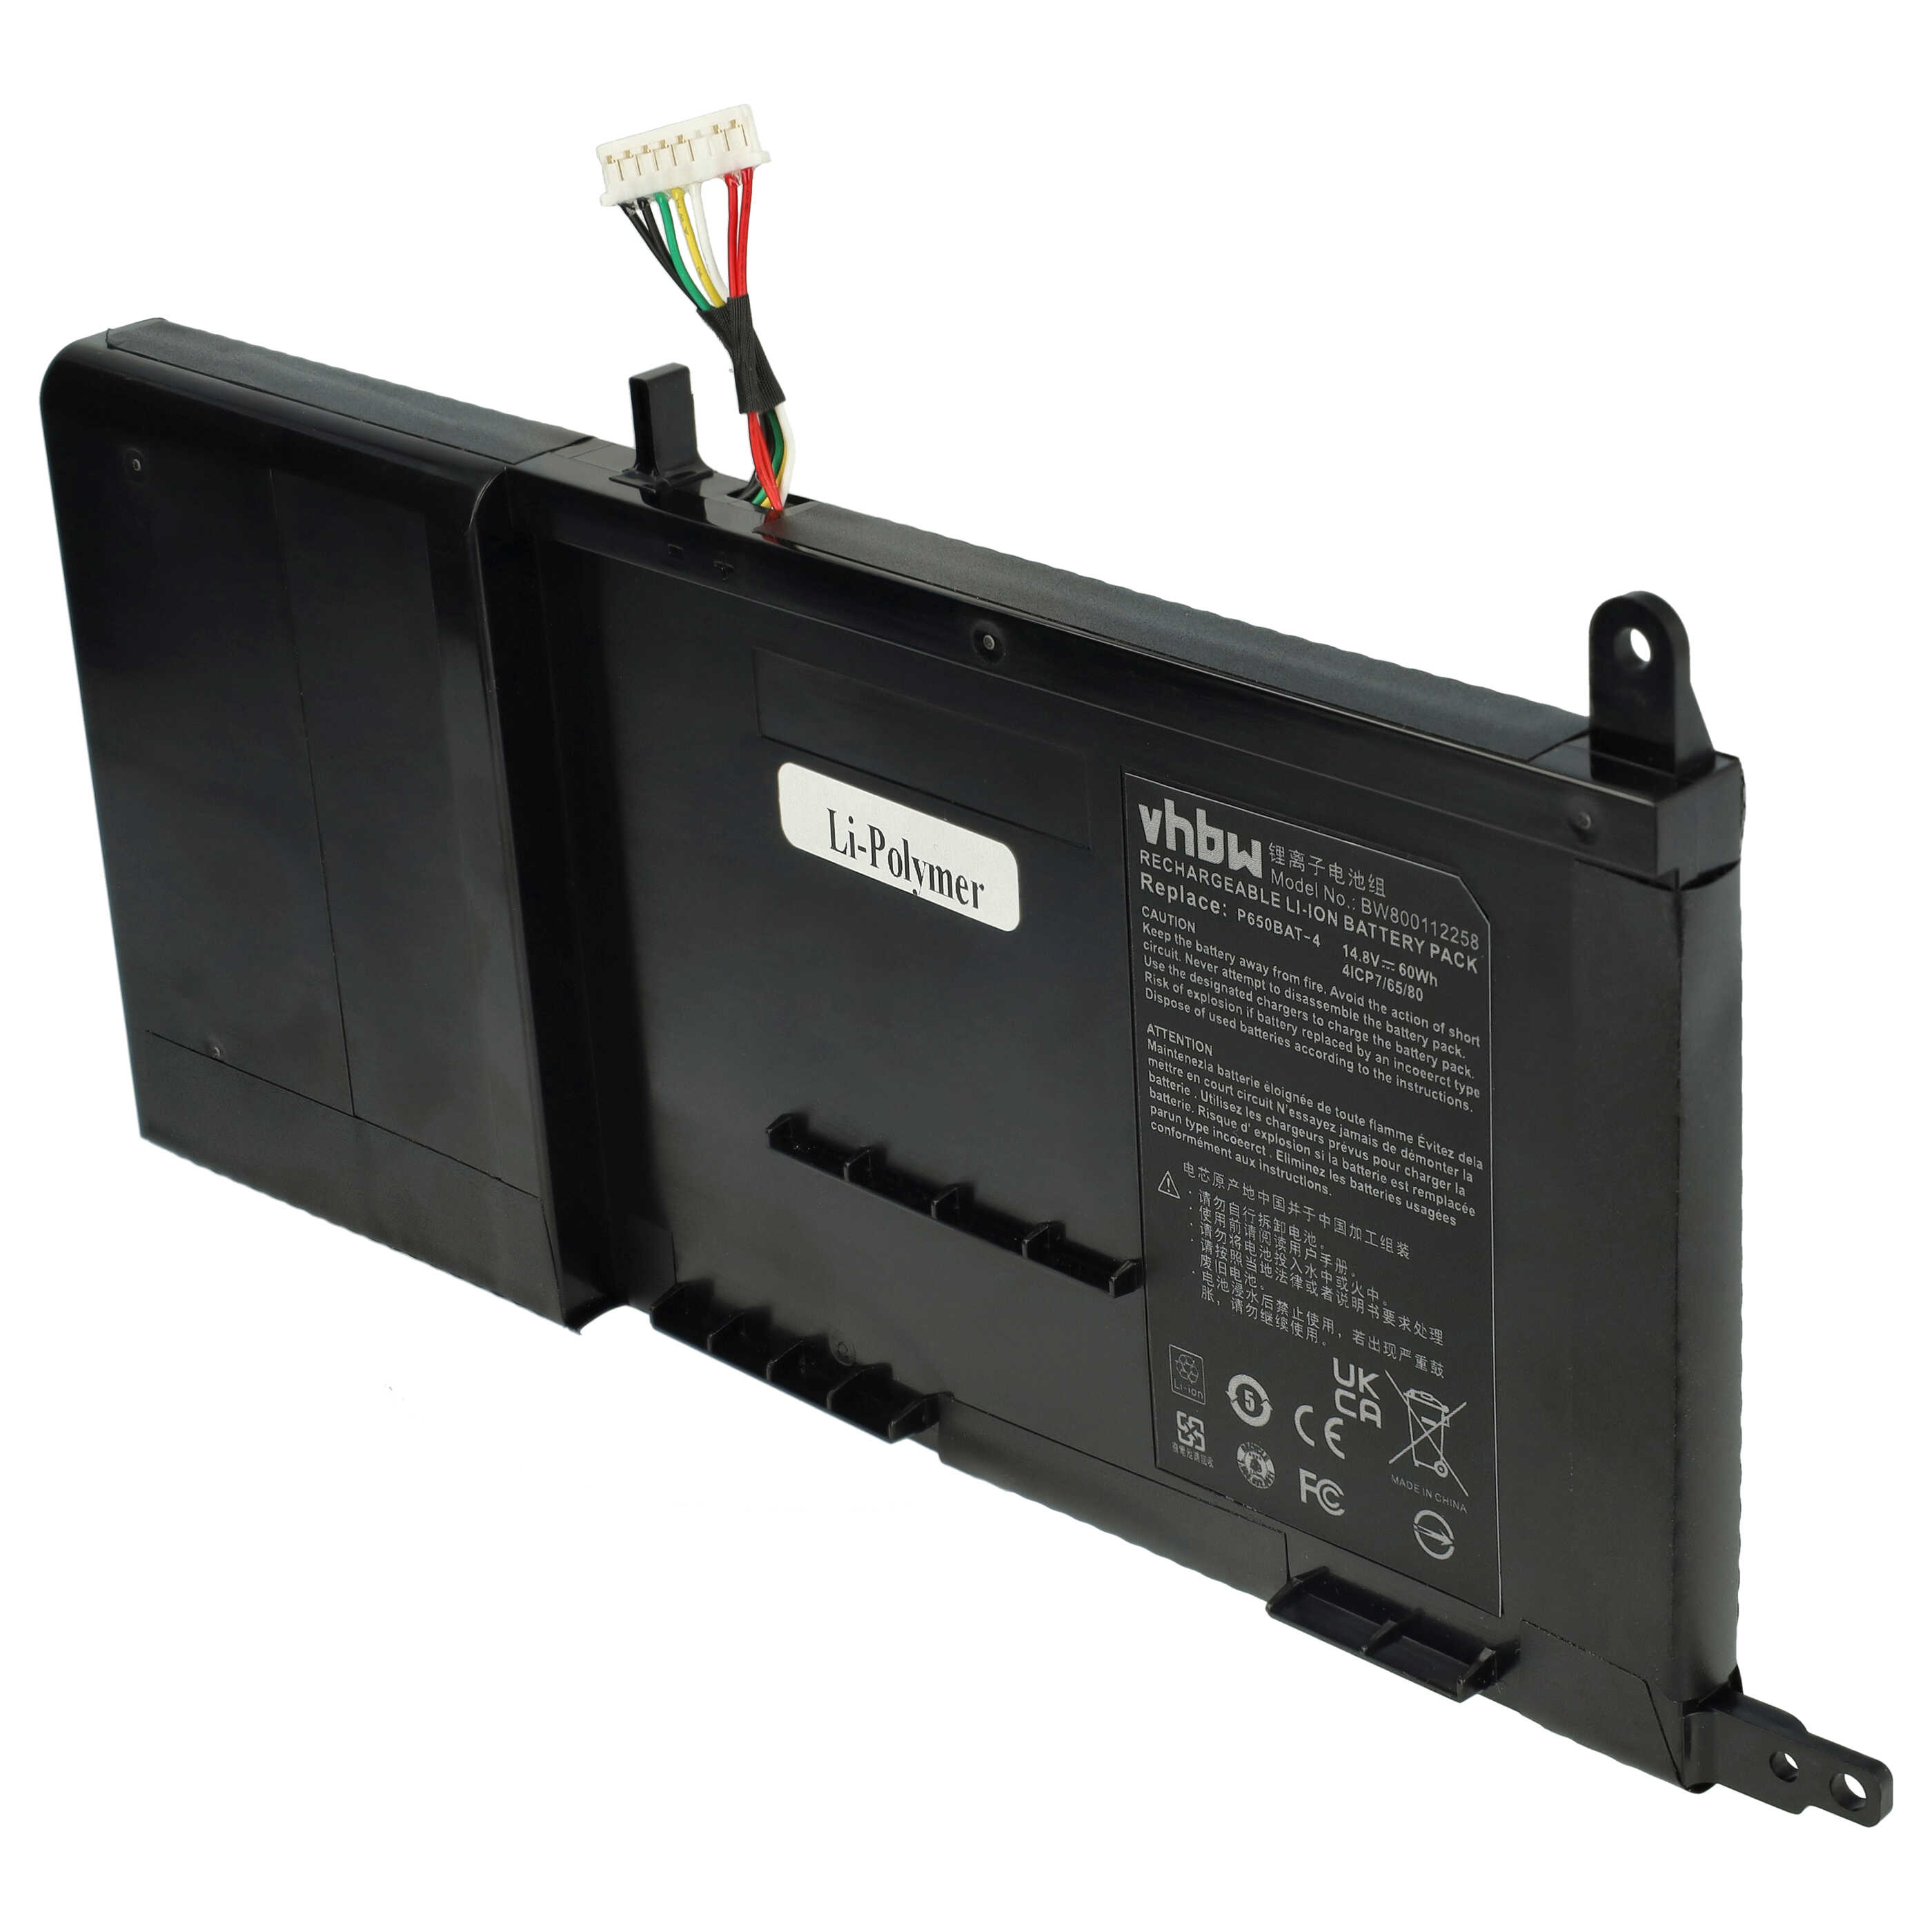 Batterie remplace 6-87-P650S-4252, P650BAT-4 pour ordinateur portable - 4050mAh 14,8V Li-polymère, noir